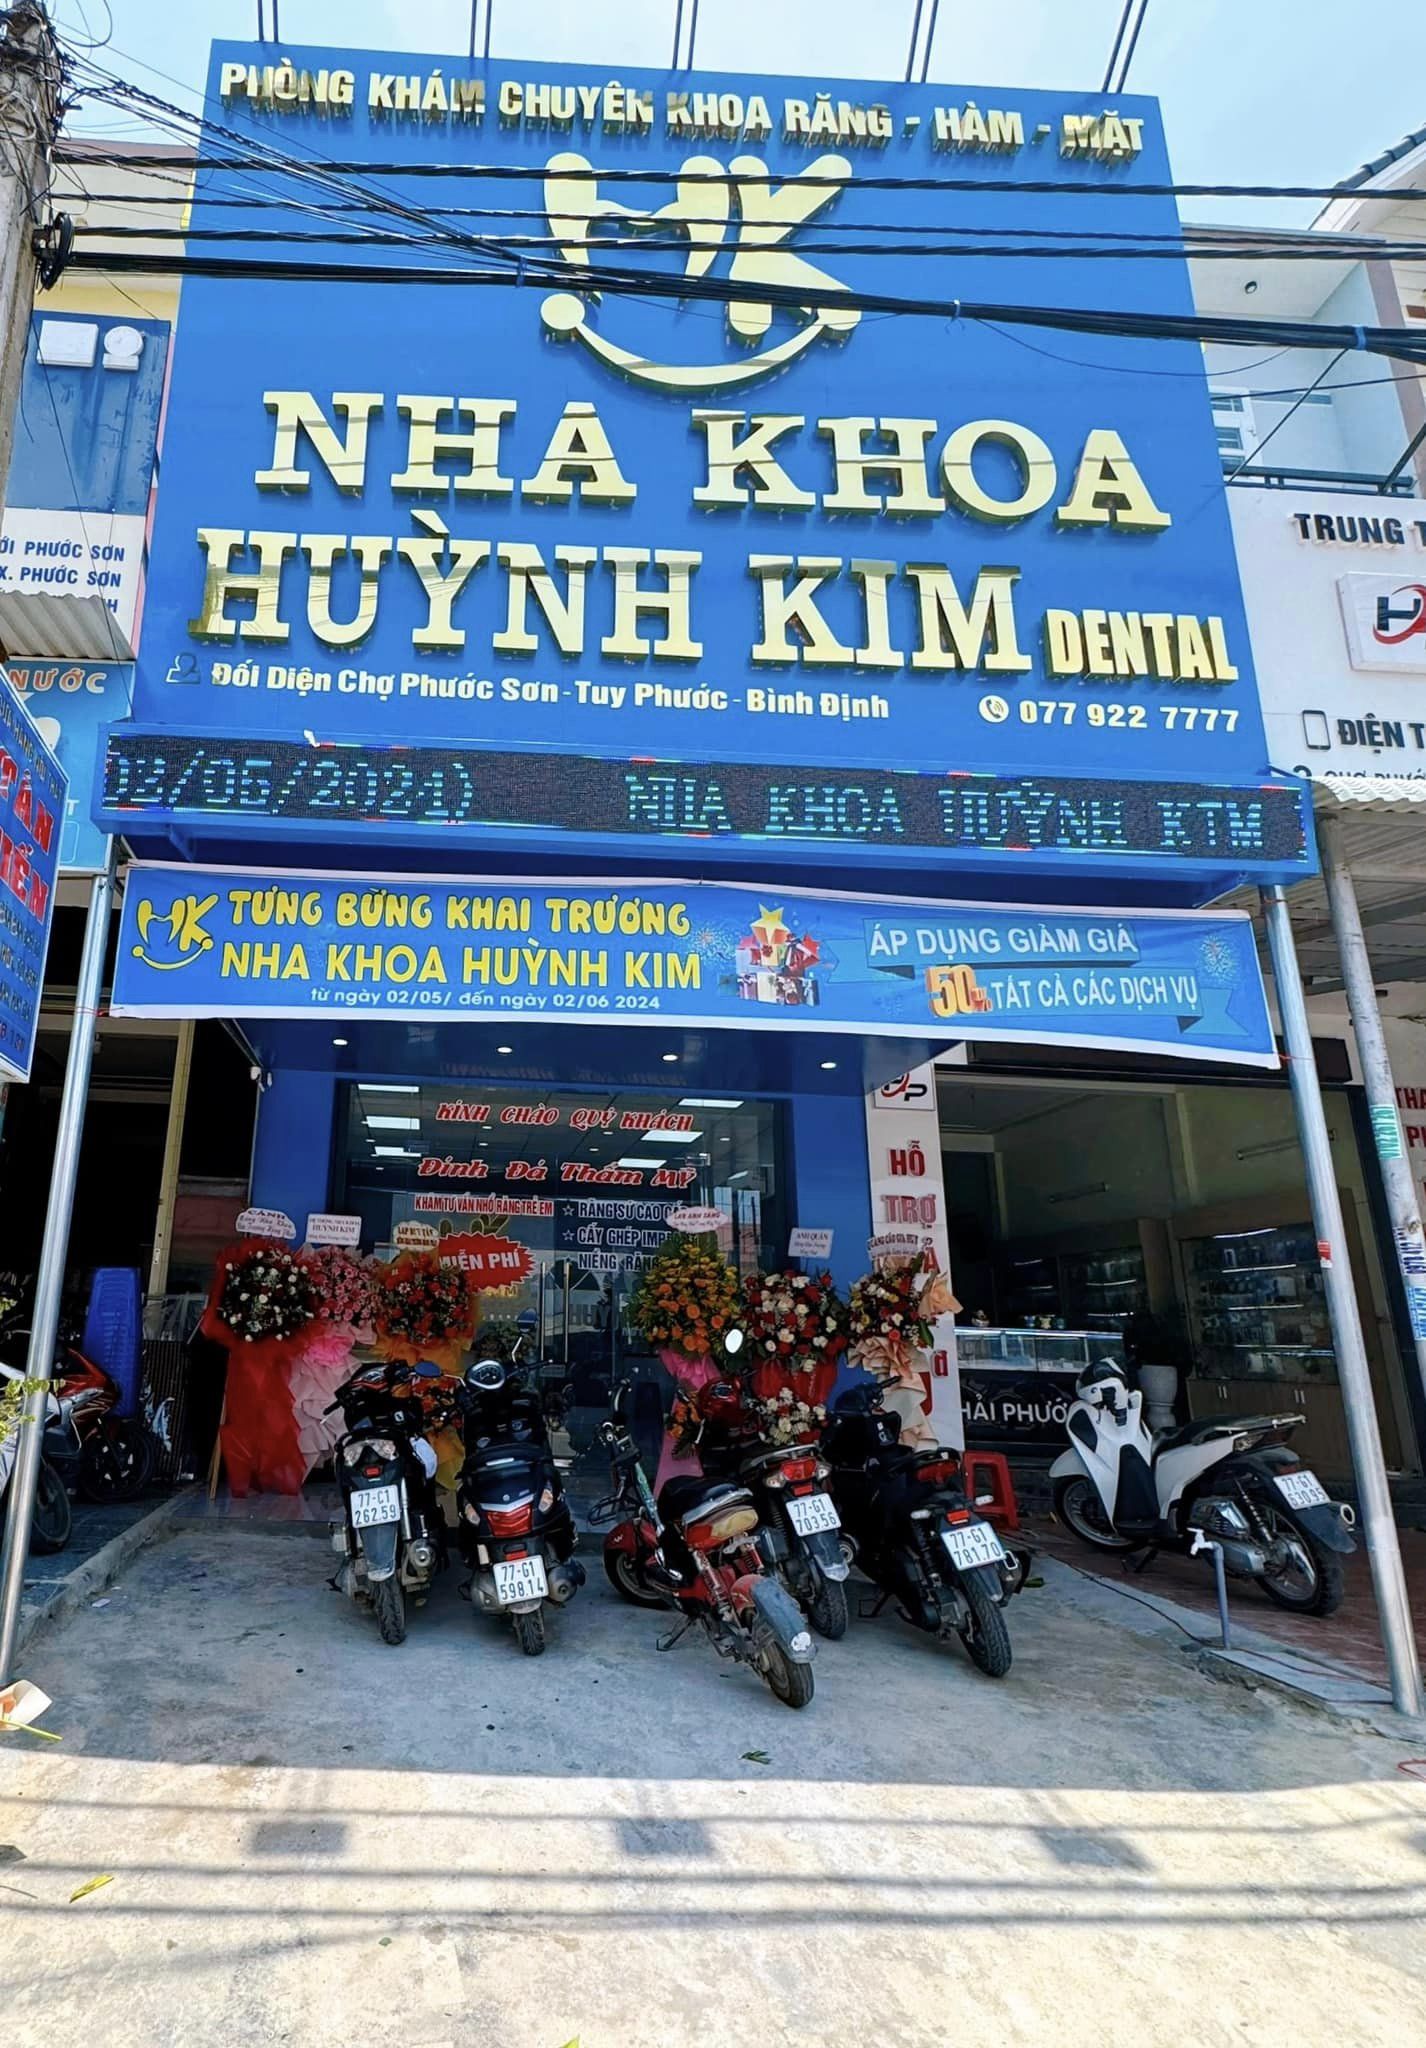 Nha Khoa Thẩm Mỹ Quy Nhơn - Huỳnh Kim Dental ảnh 2